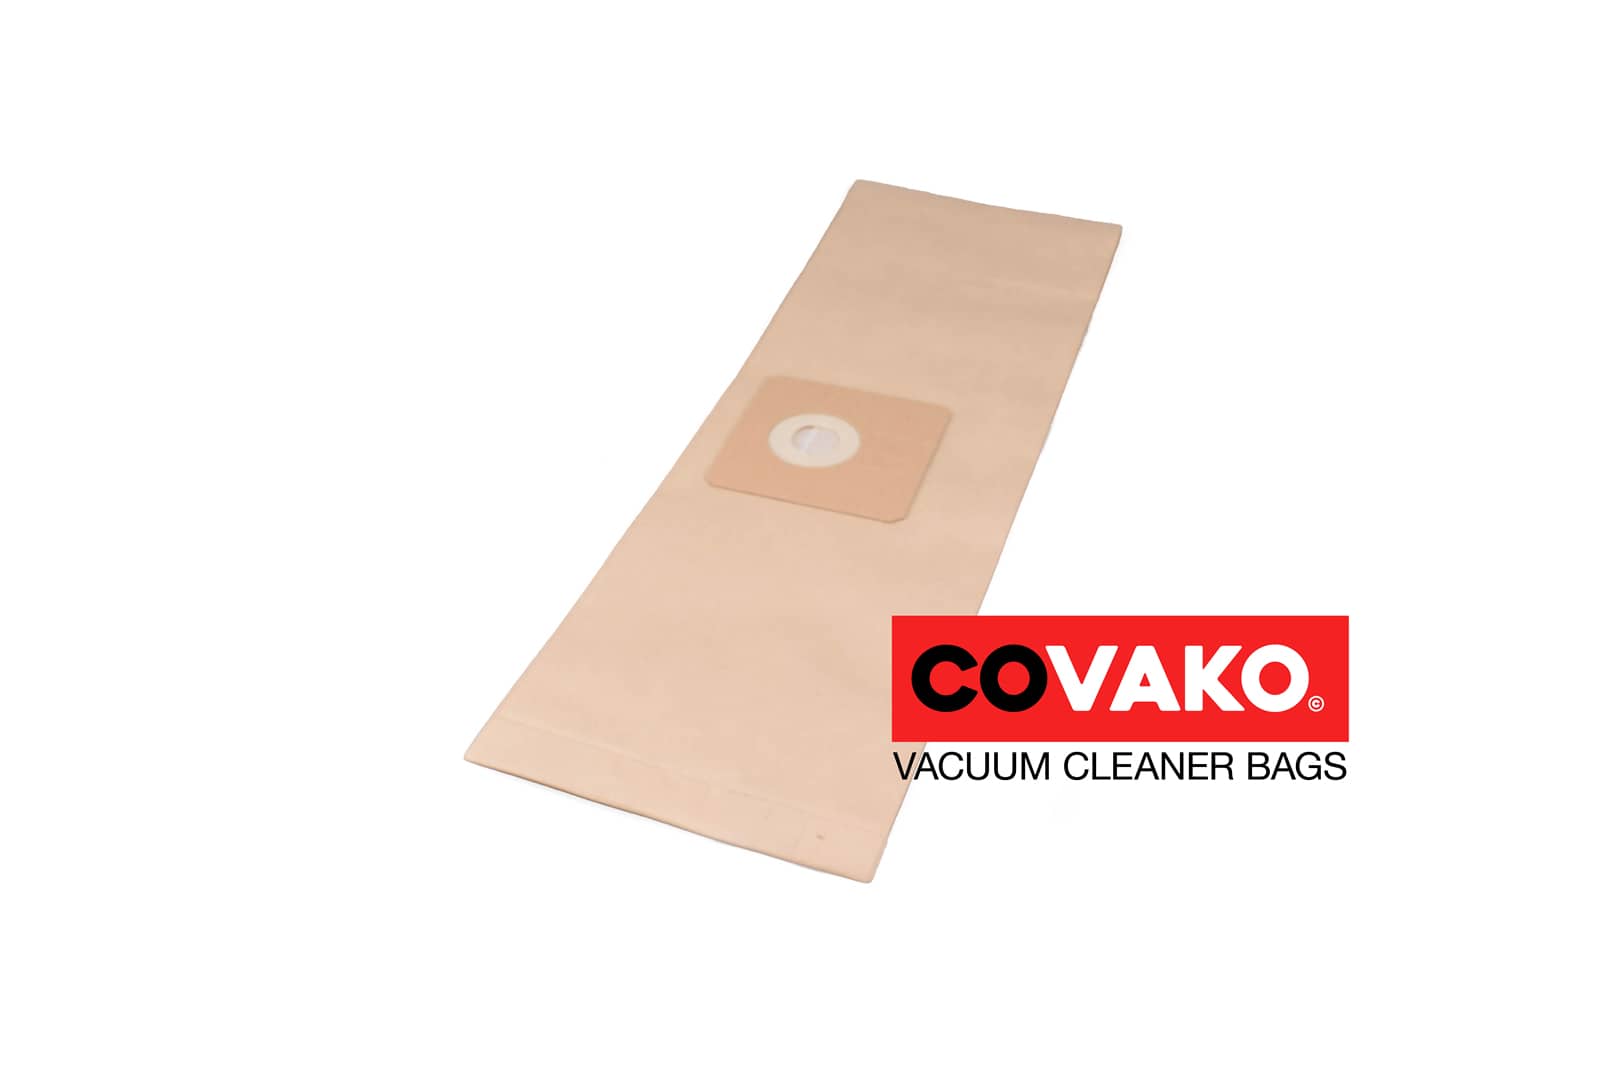 Floorpul Picollo / Paper - Floorpul vacuum cleaner bags